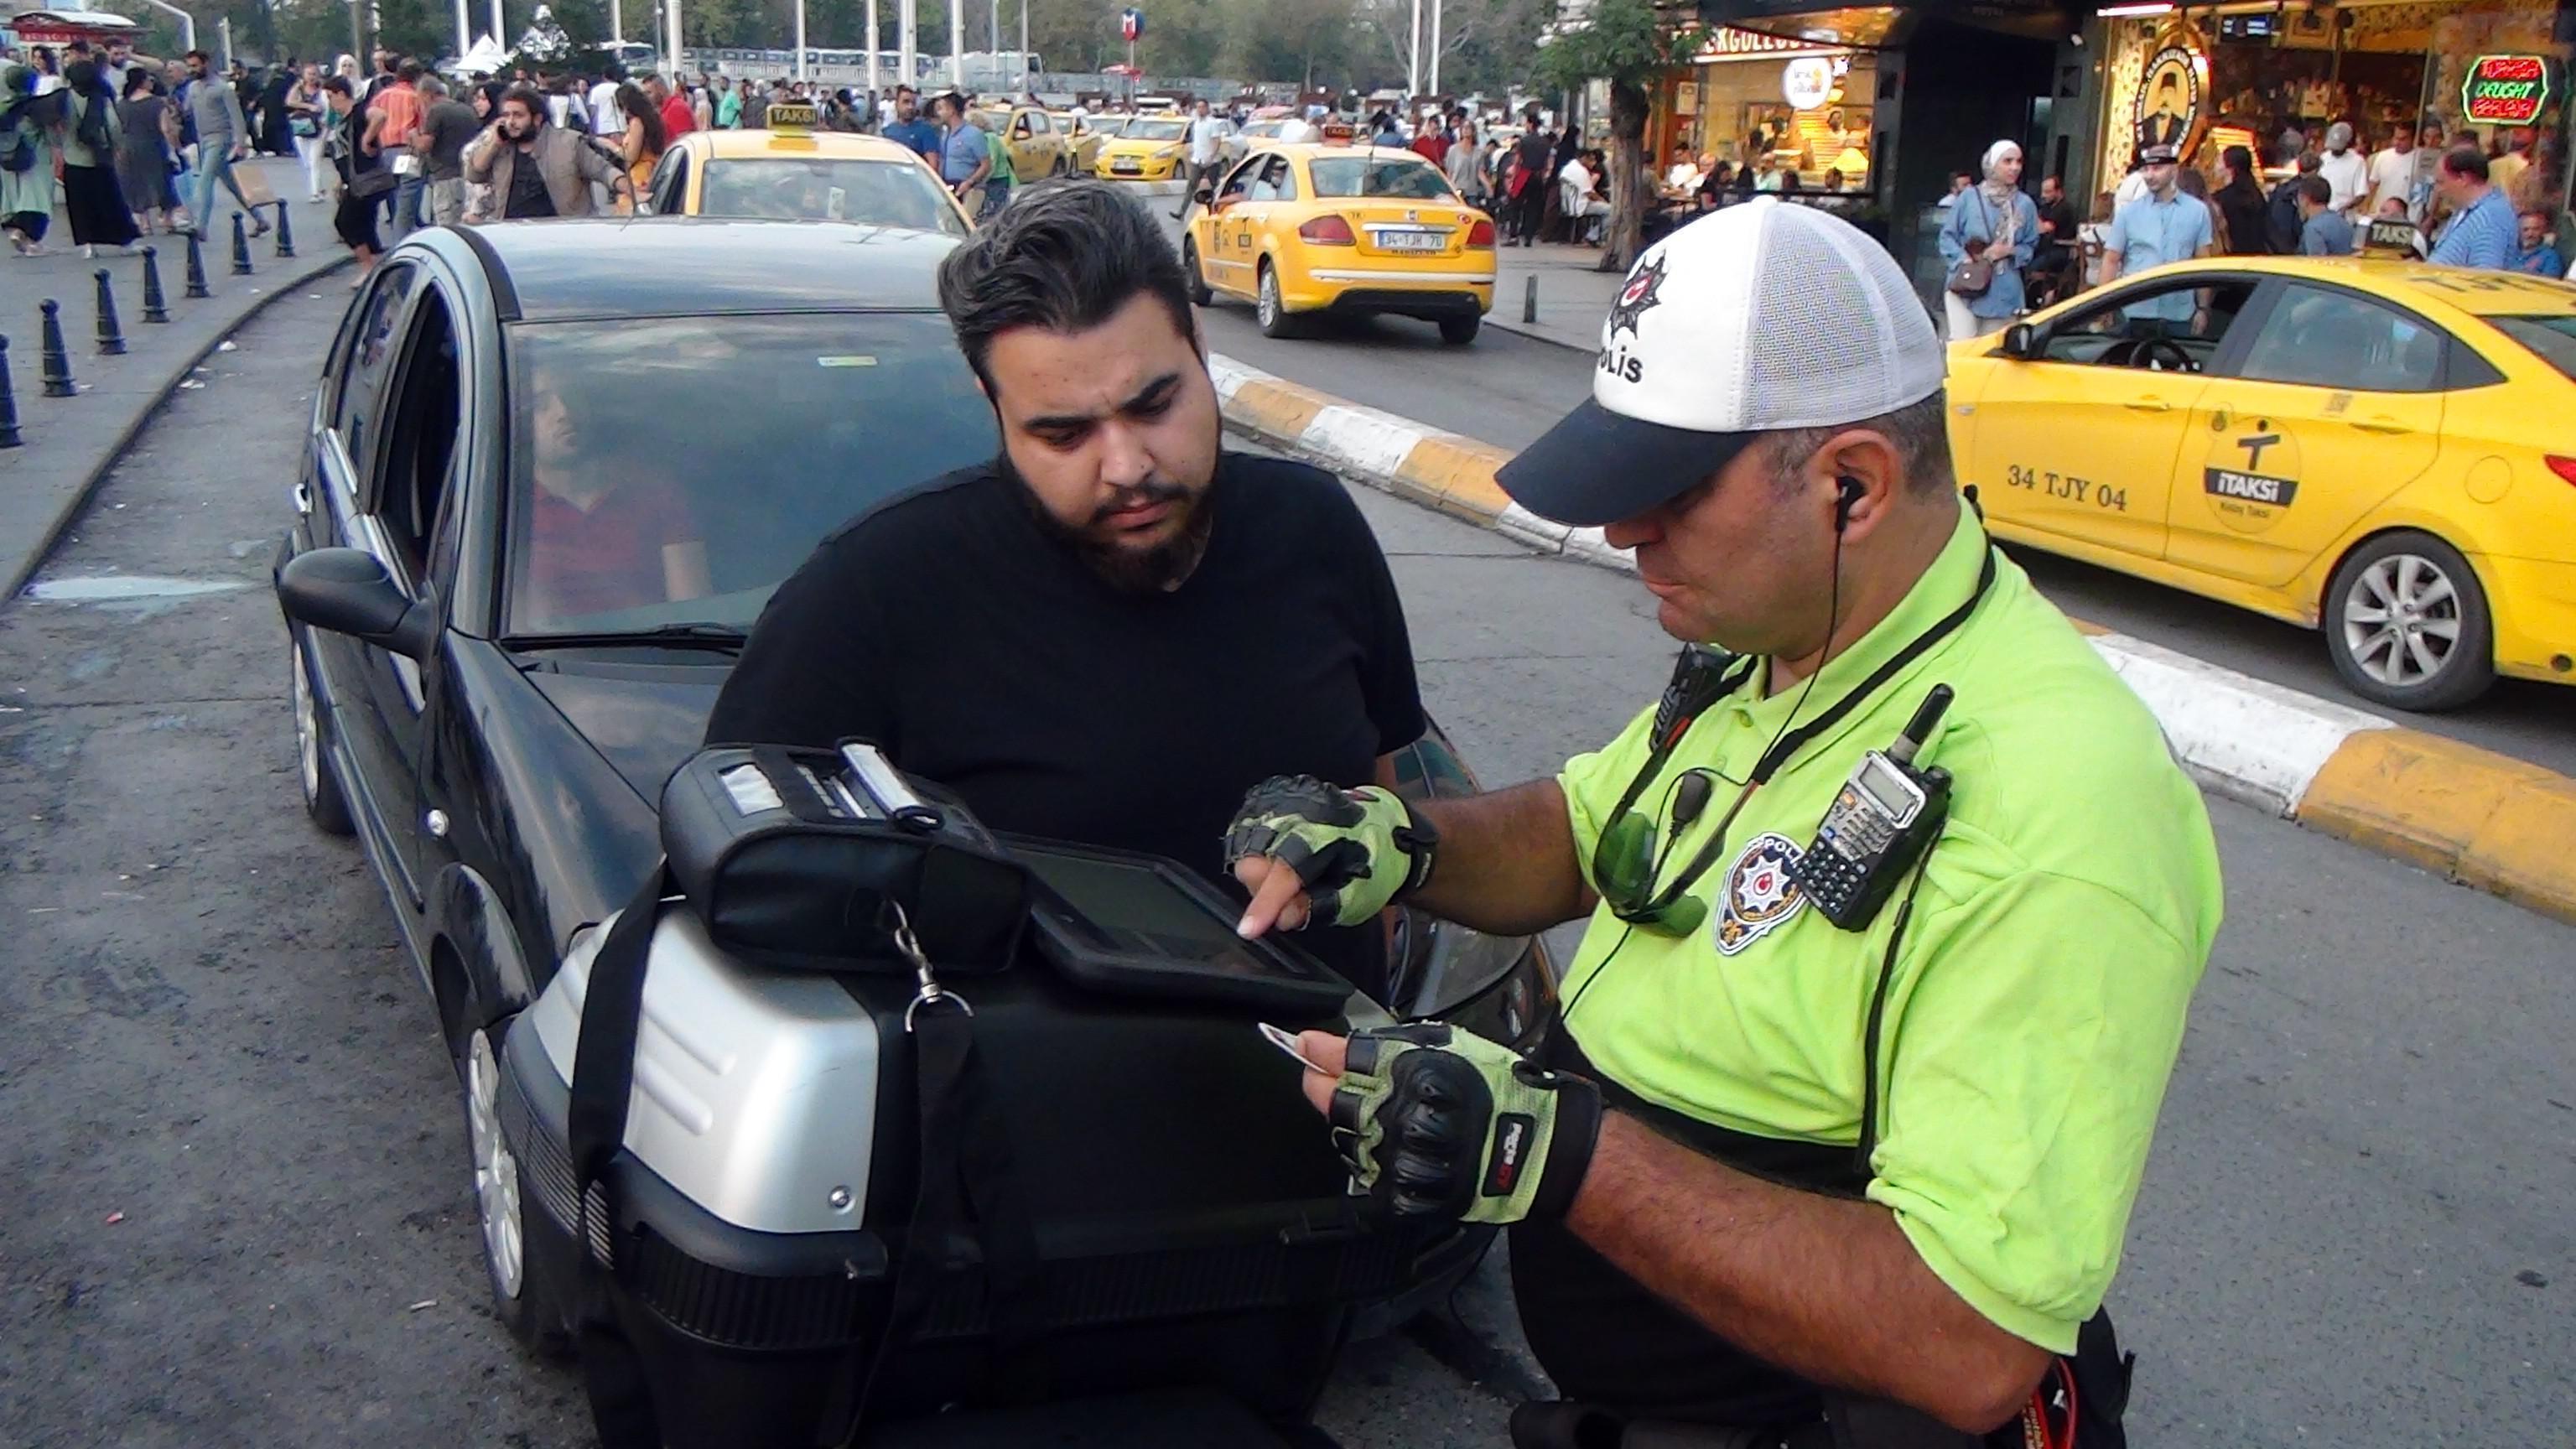 Taksimde kurallara uymayan sürücülere ceza yağdı